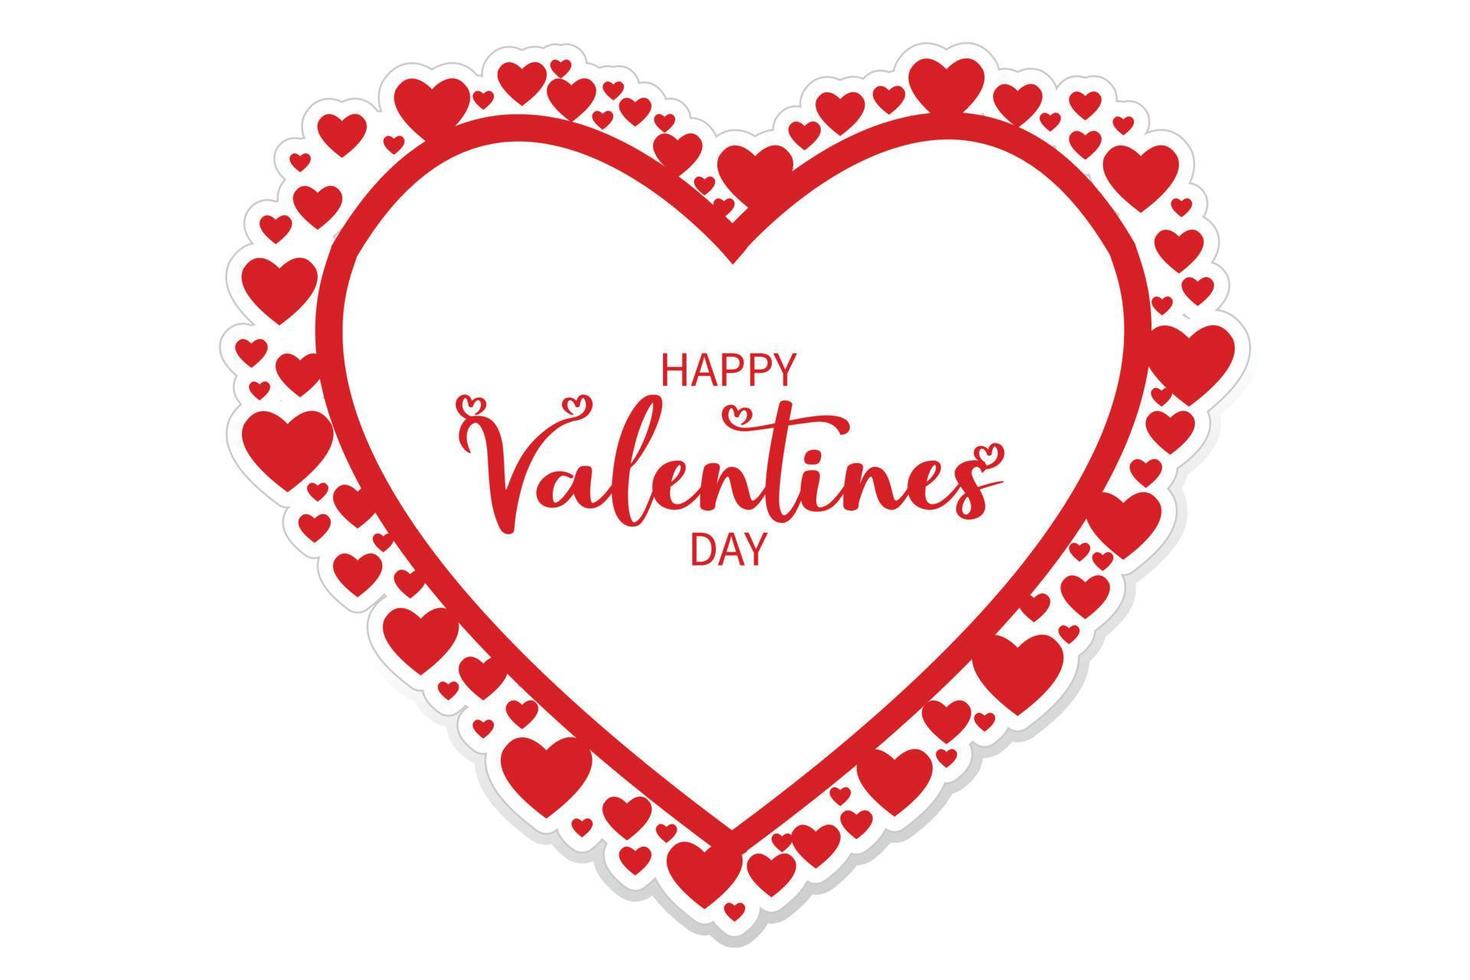 felice giorno di san valentino tipografia a forma di cuore disegno vettoriale. vettore libero per la stampa. carta, logo, scritte, desideri